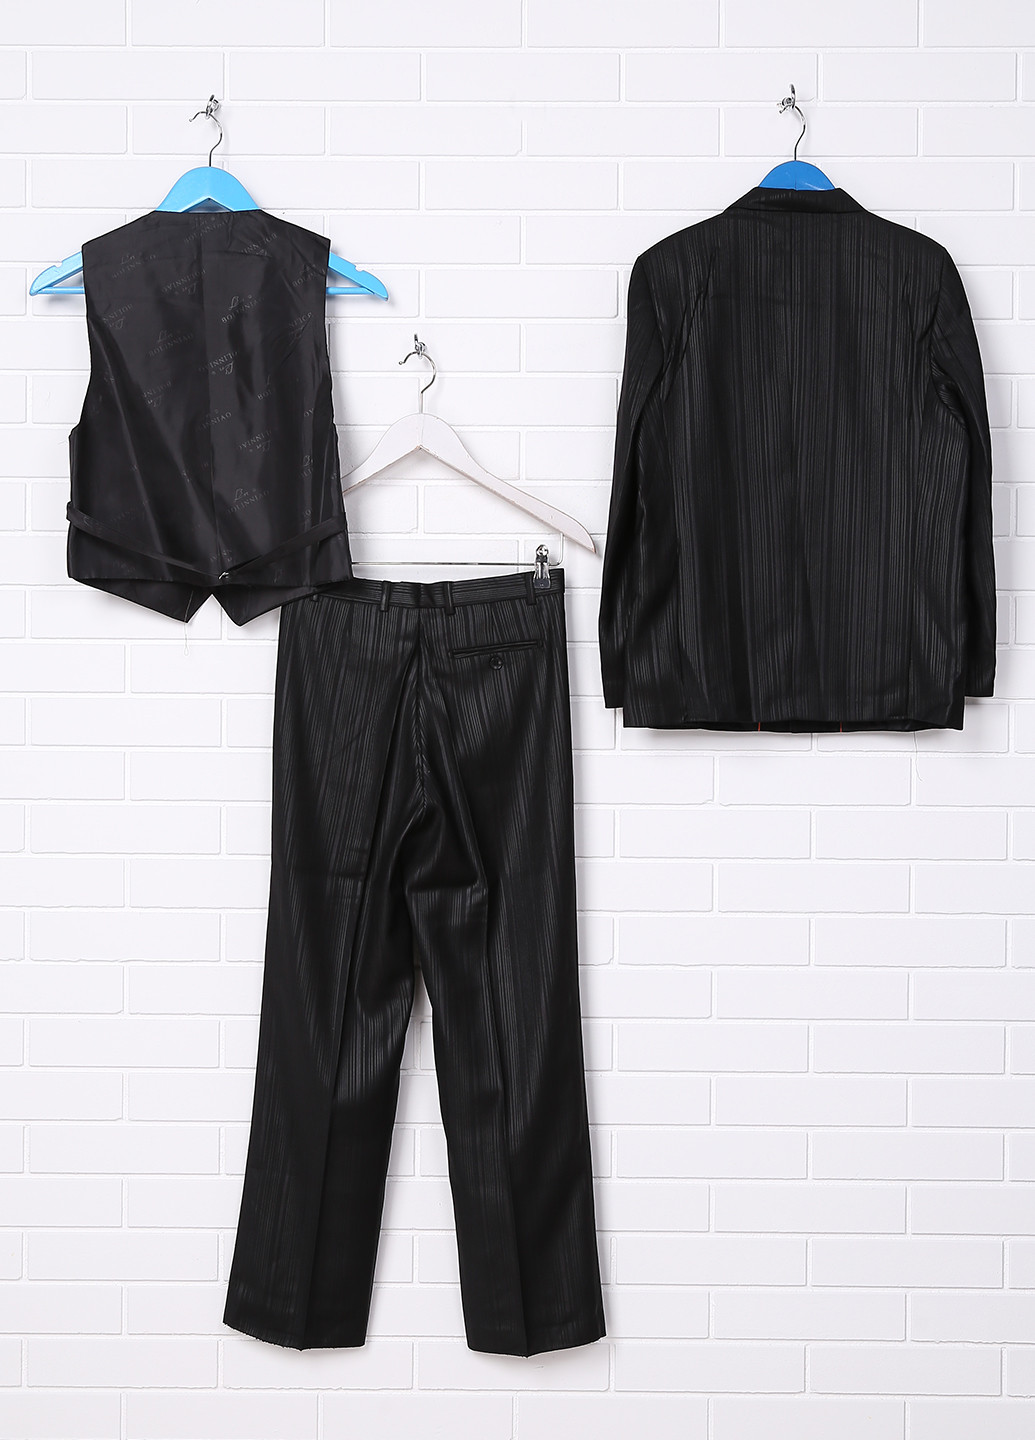 Черный демисезонный костюм (пиджак, жилет, брюки) тройка Bolinniao